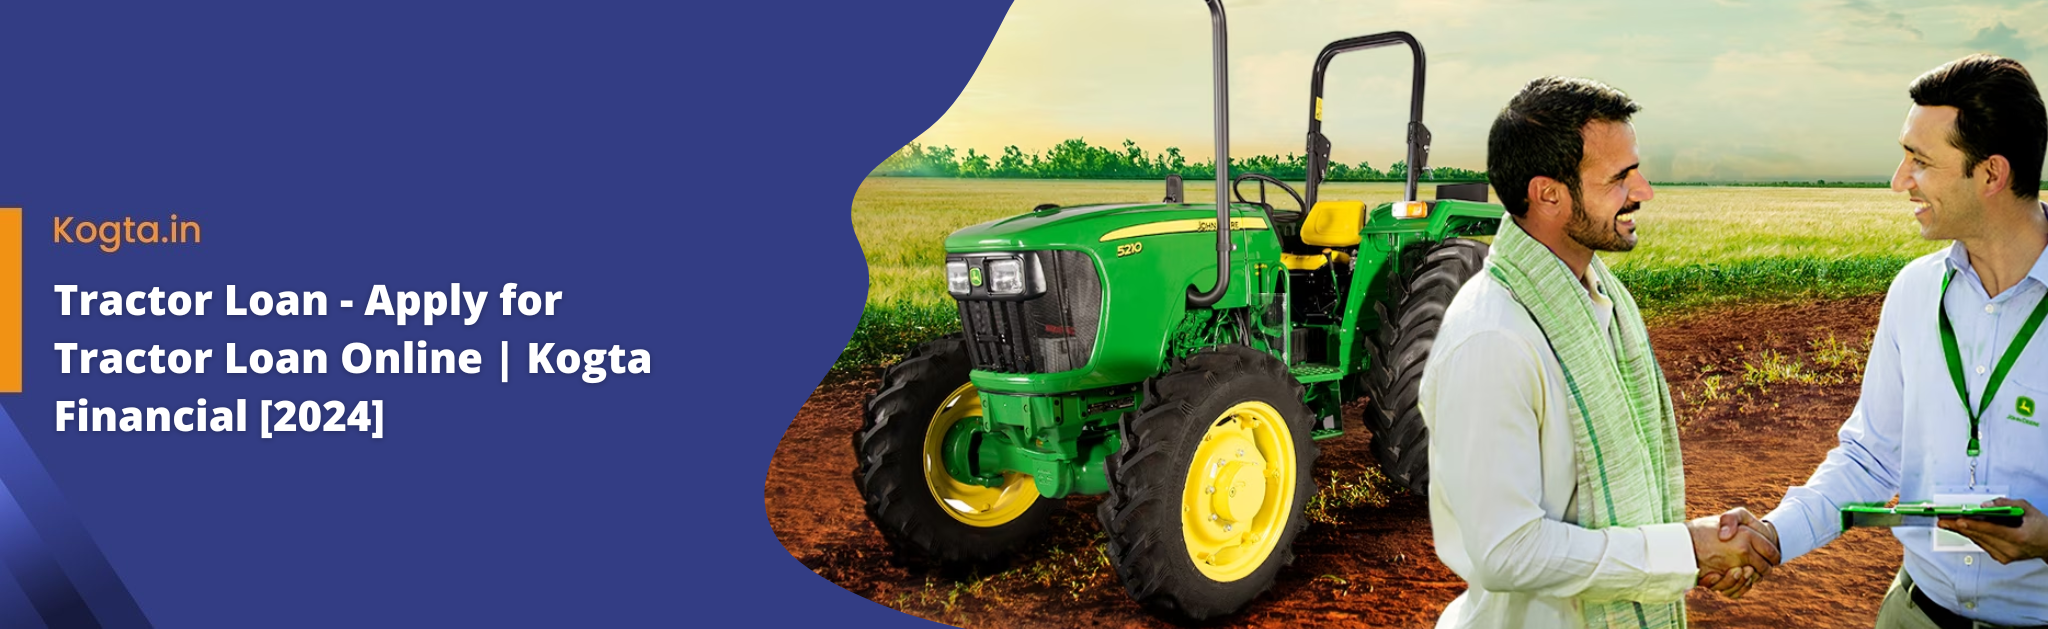 Tractor Loan - Apply for Tractor Loan Online Kogta Financial [2024]